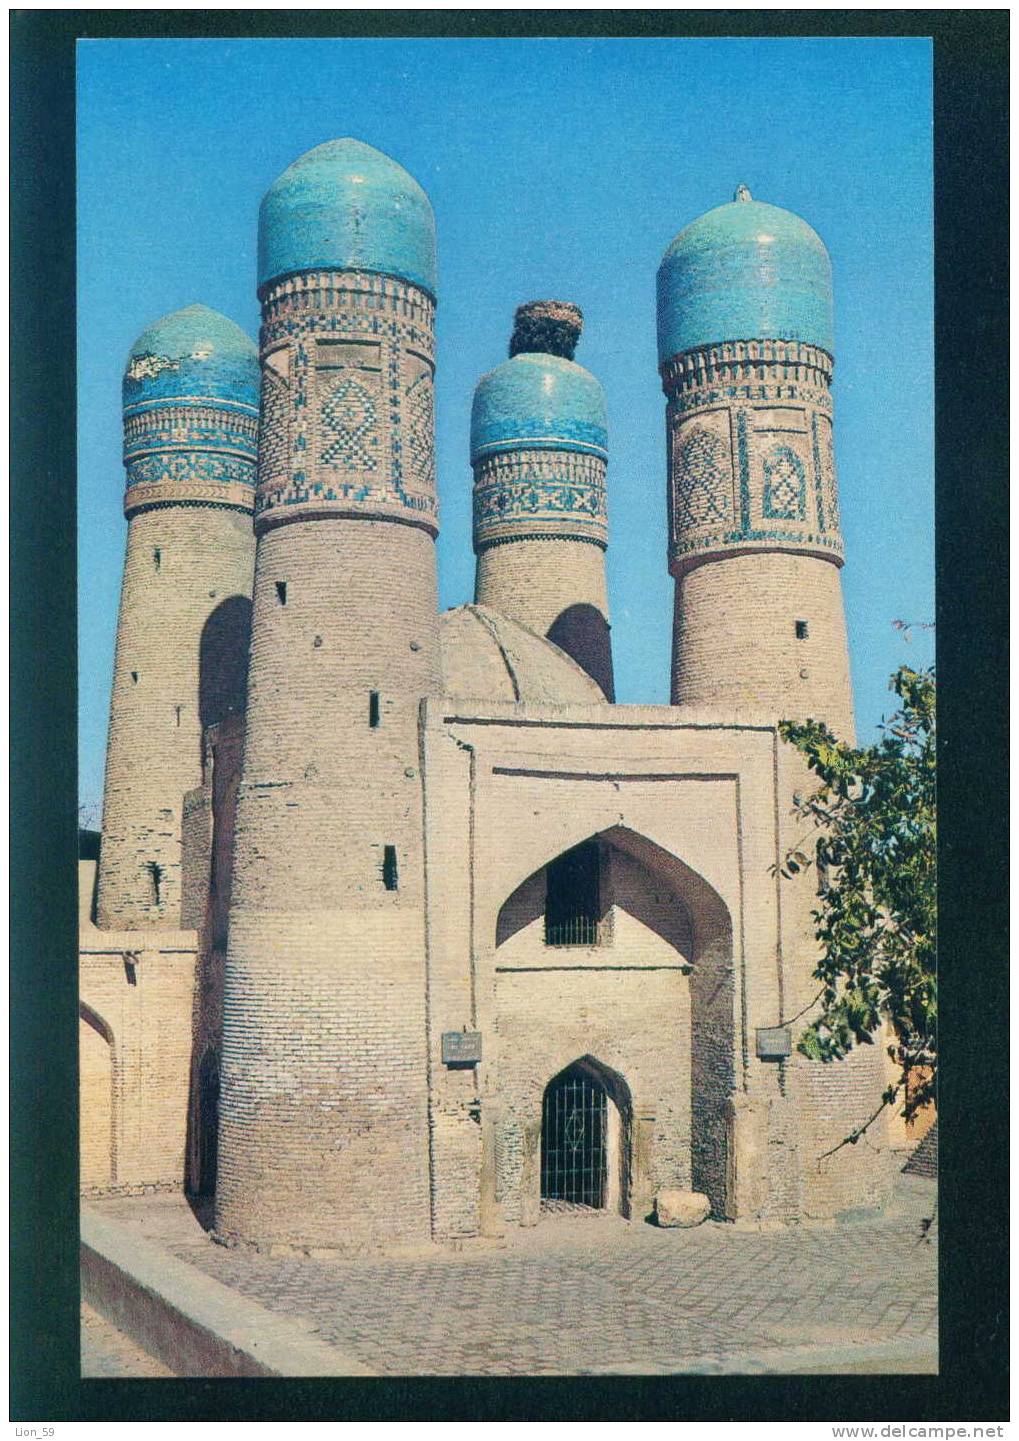 Uzbekistan - BUKHARA - CHAR - MINAR ENTRANCE TO A MADRASSAH 1807 / 086051 - Uzbekistan